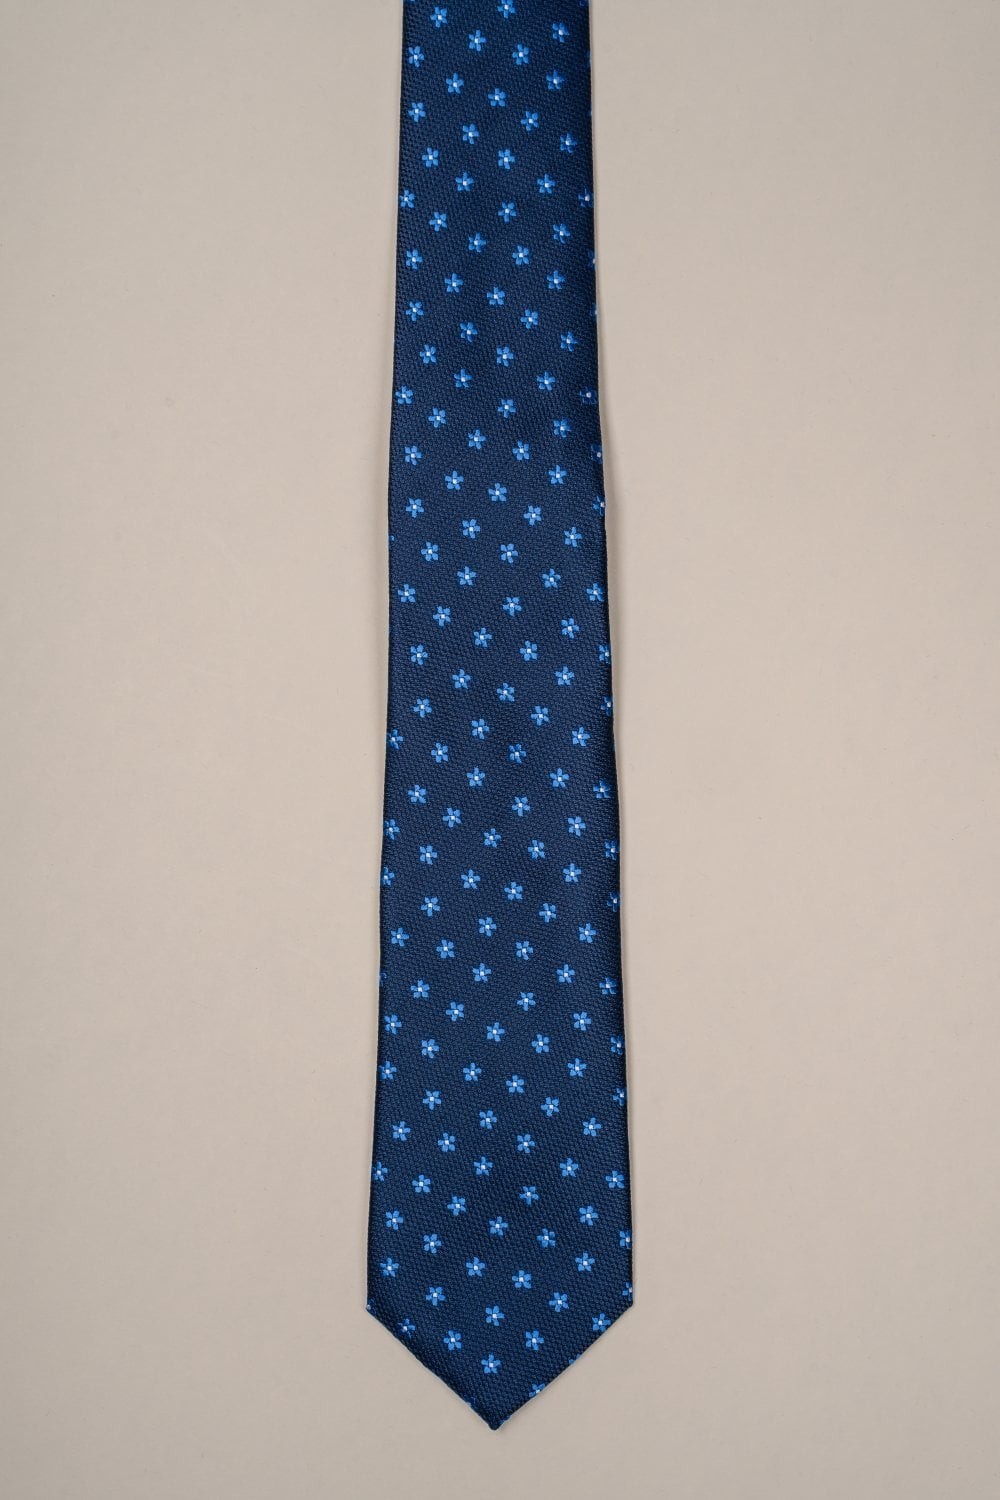 Herren Hochzeits- und Business-Floralmuster-Krawatte, formelle karierte Halsbekleidung